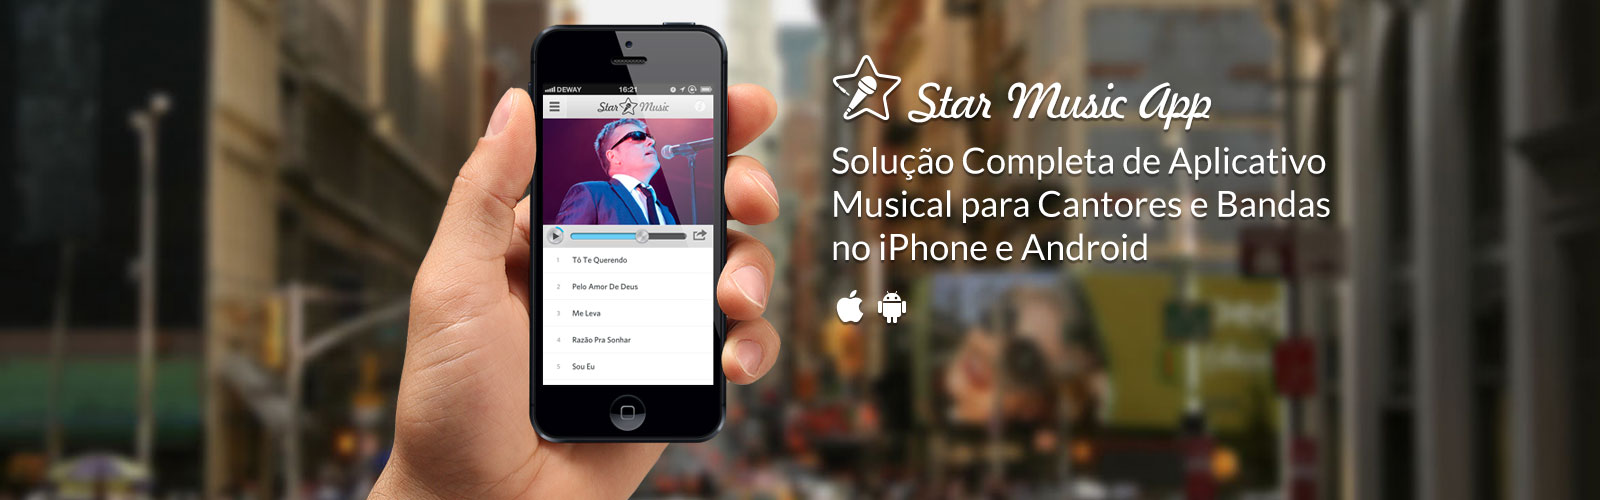 aplicativo-solucao-completa-para-cantores-e-bandas-de-musica-no-iphone-e-android